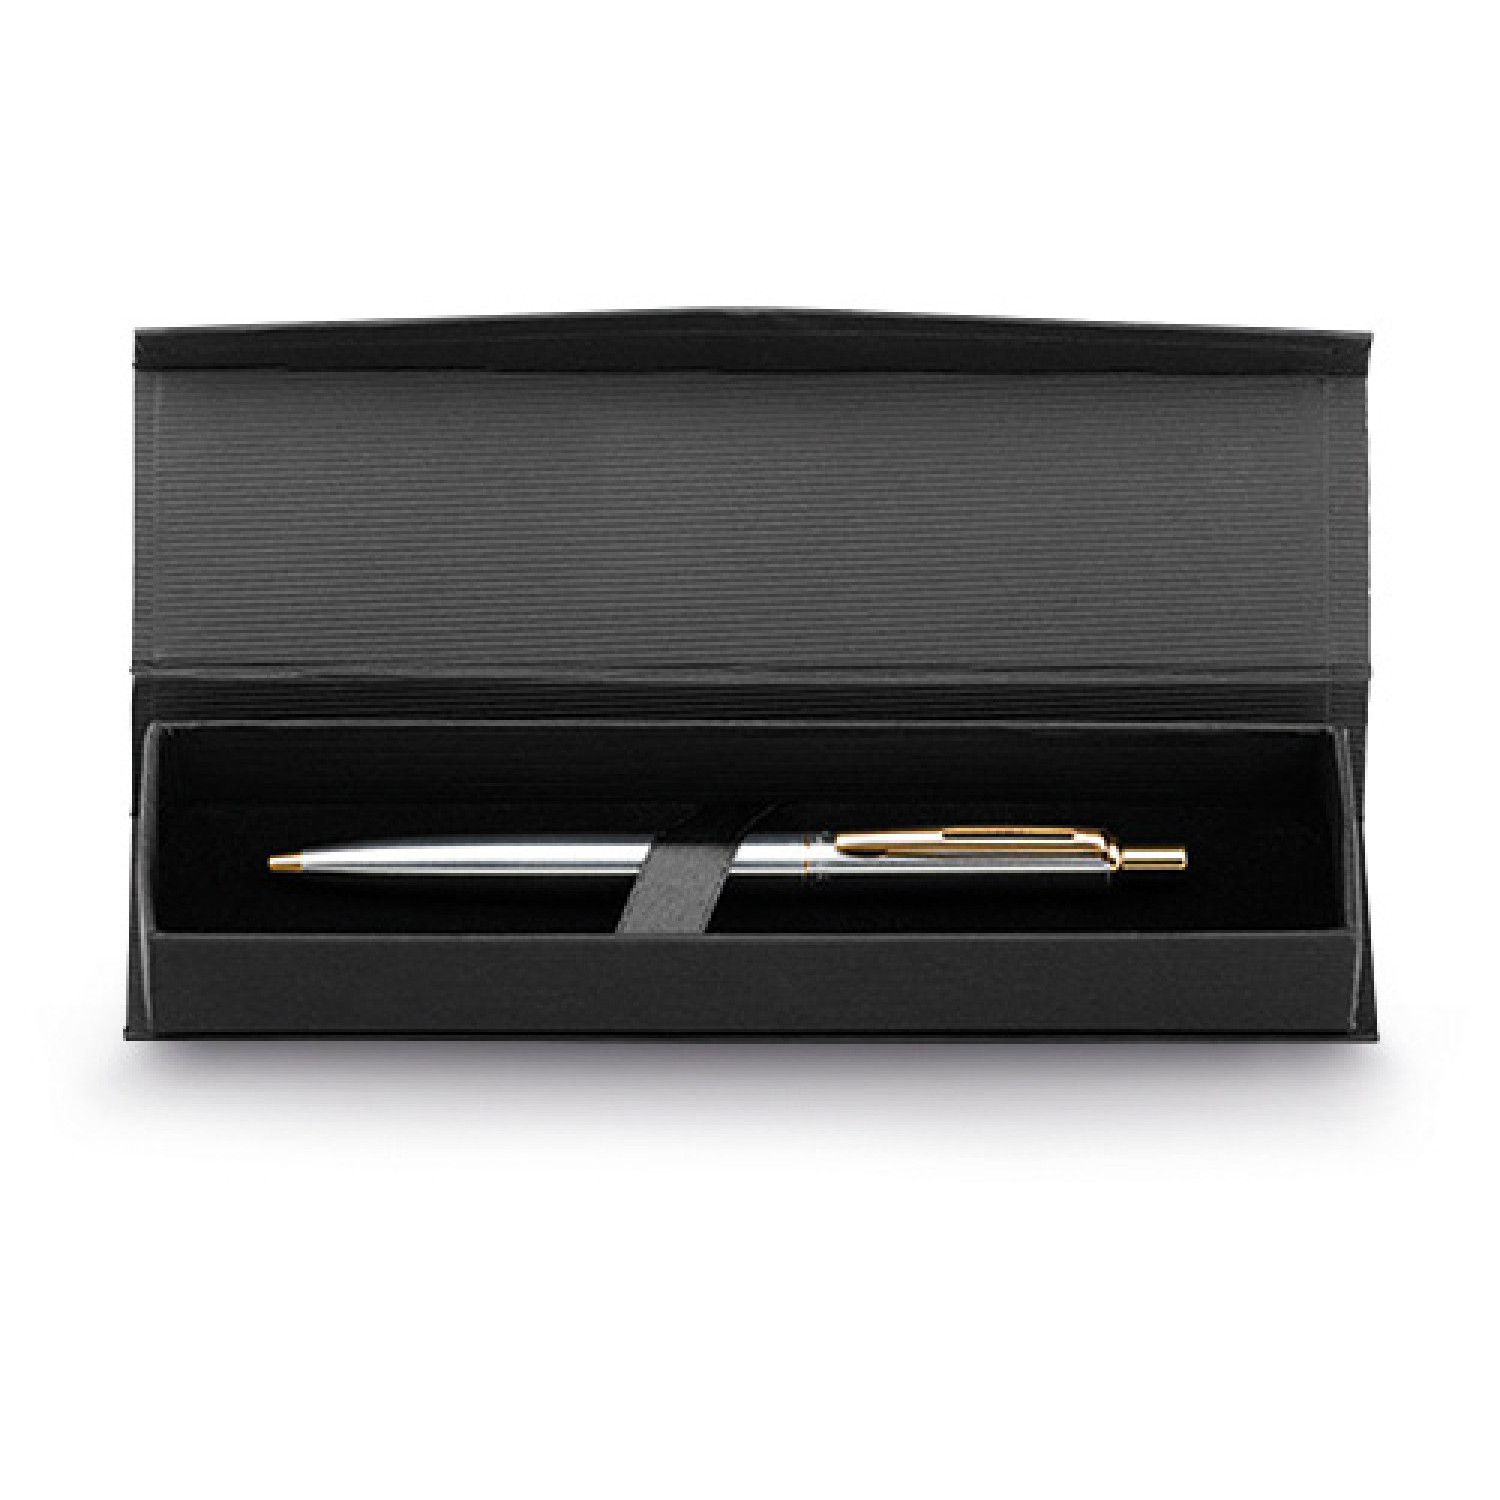 Mетална химикалка Silverio 2186-G-Box, в кутия, сребърен със злато